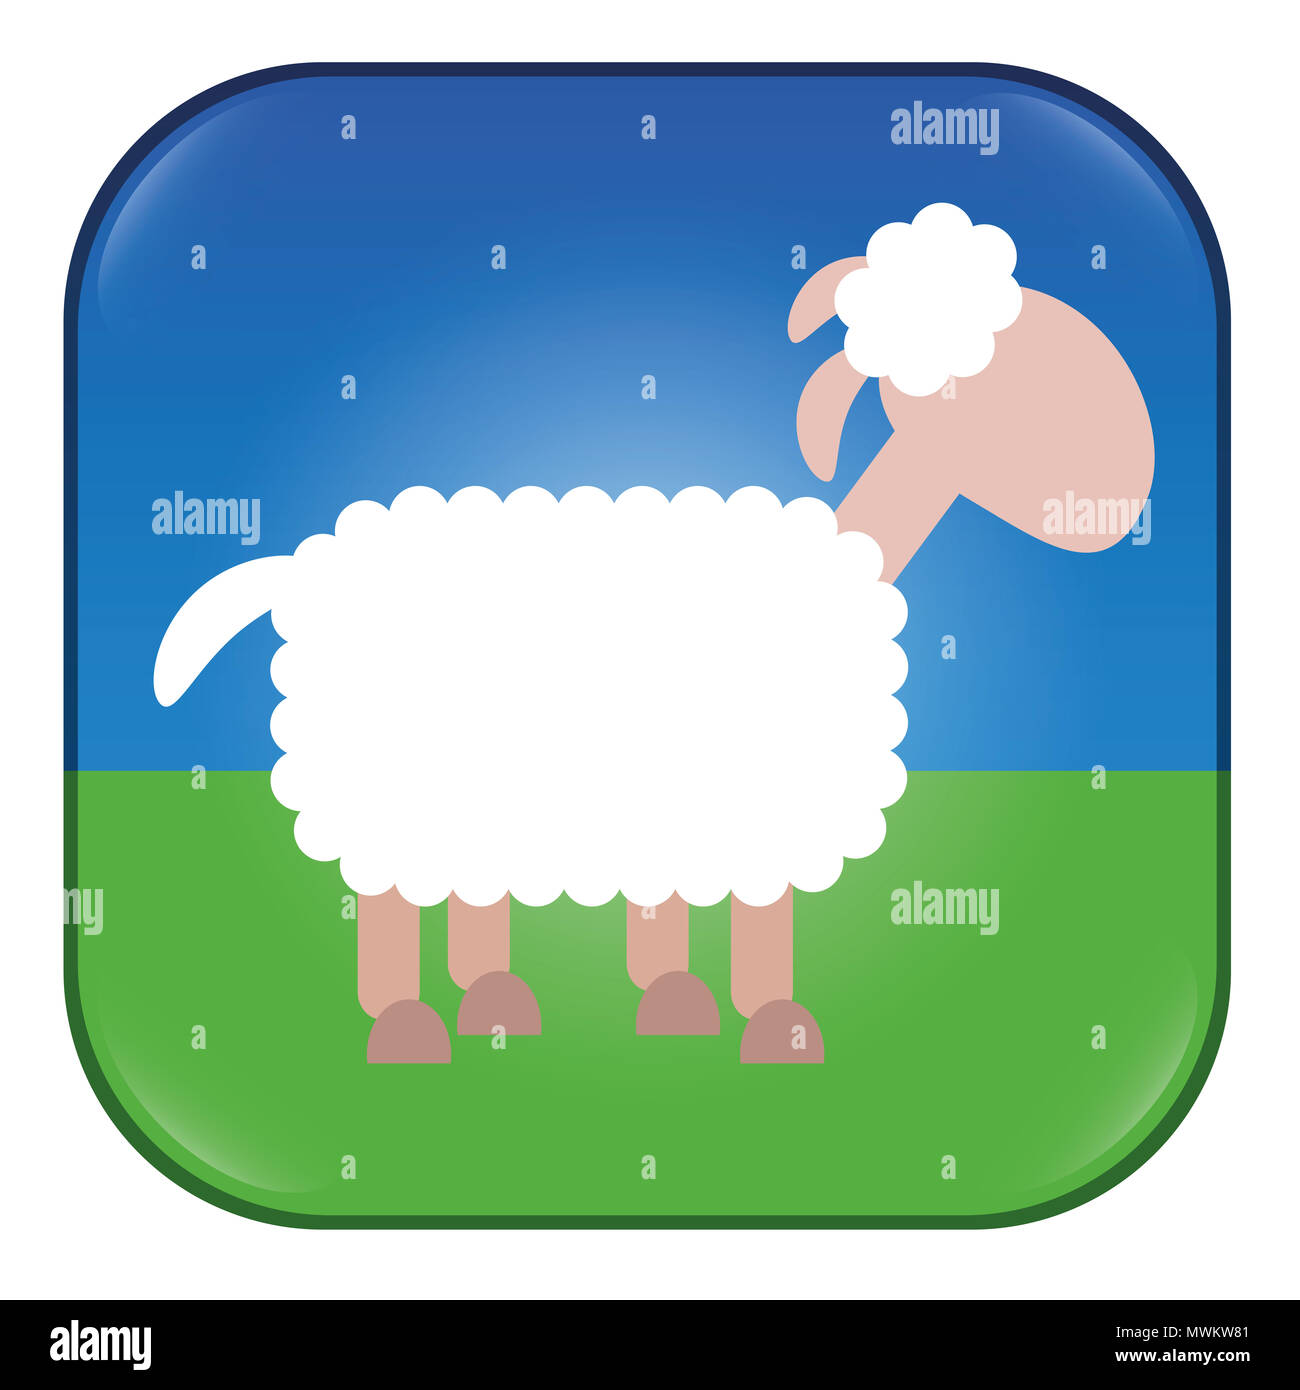 Les moutons App. Demande de compter les moutons, comme le bouton snooze, pour bêlements ou tout autre sujet. Illustration bande dessinée d'un mouton blanc. Banque D'Images